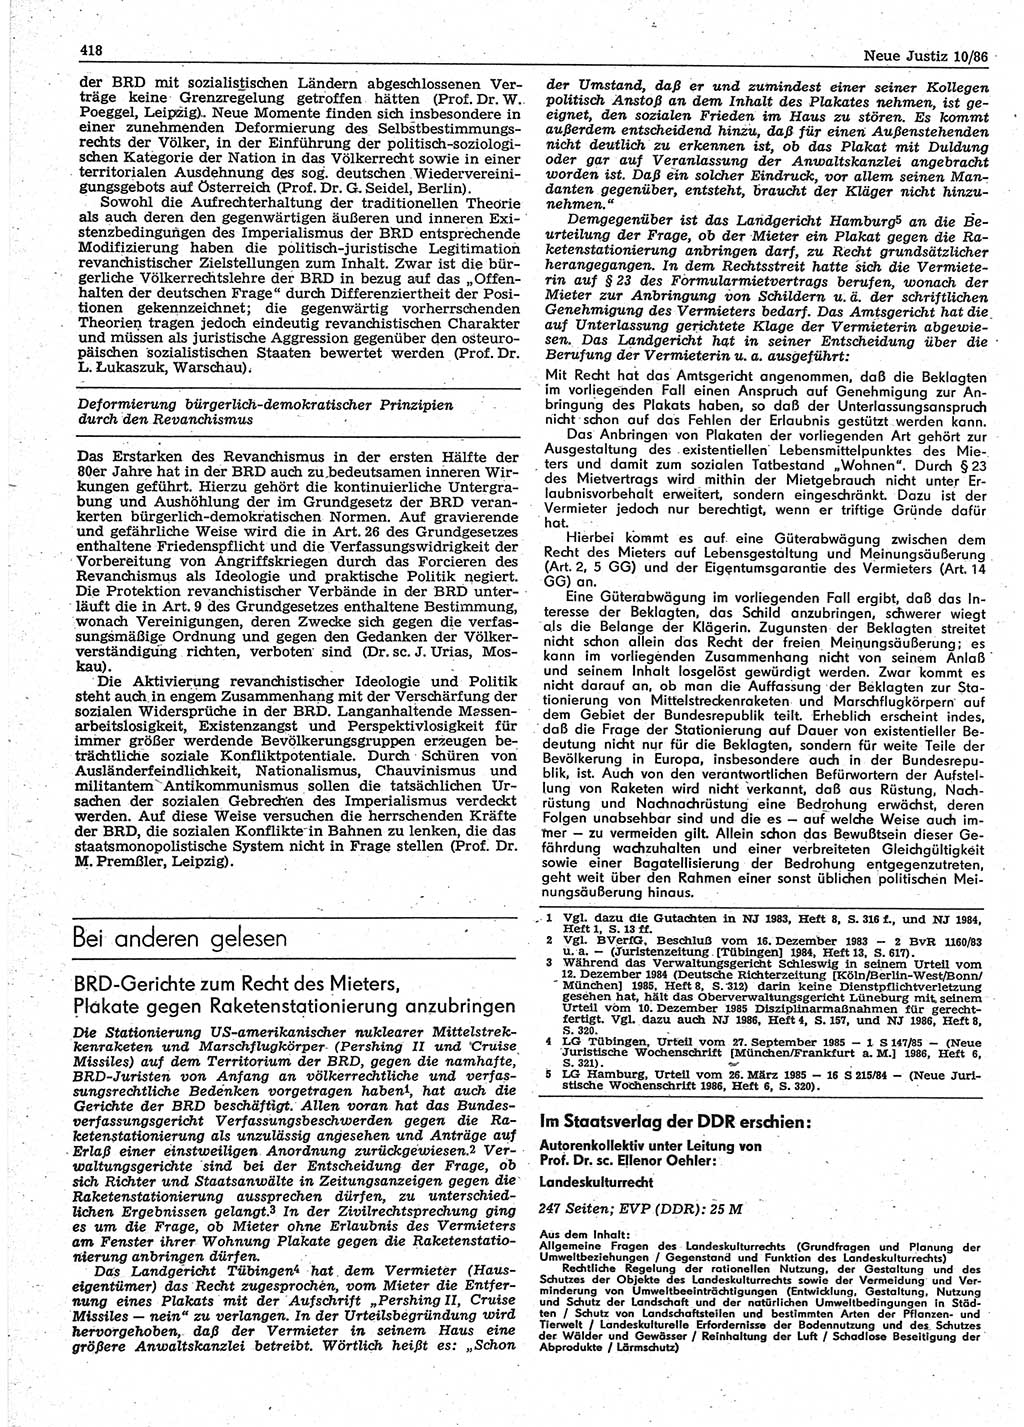 Neue Justiz (NJ), Zeitschrift für sozialistisches Recht und Gesetzlichkeit [Deutsche Demokratische Republik (DDR)], 40. Jahrgang 1986, Seite 418 (NJ DDR 1986, S. 418)